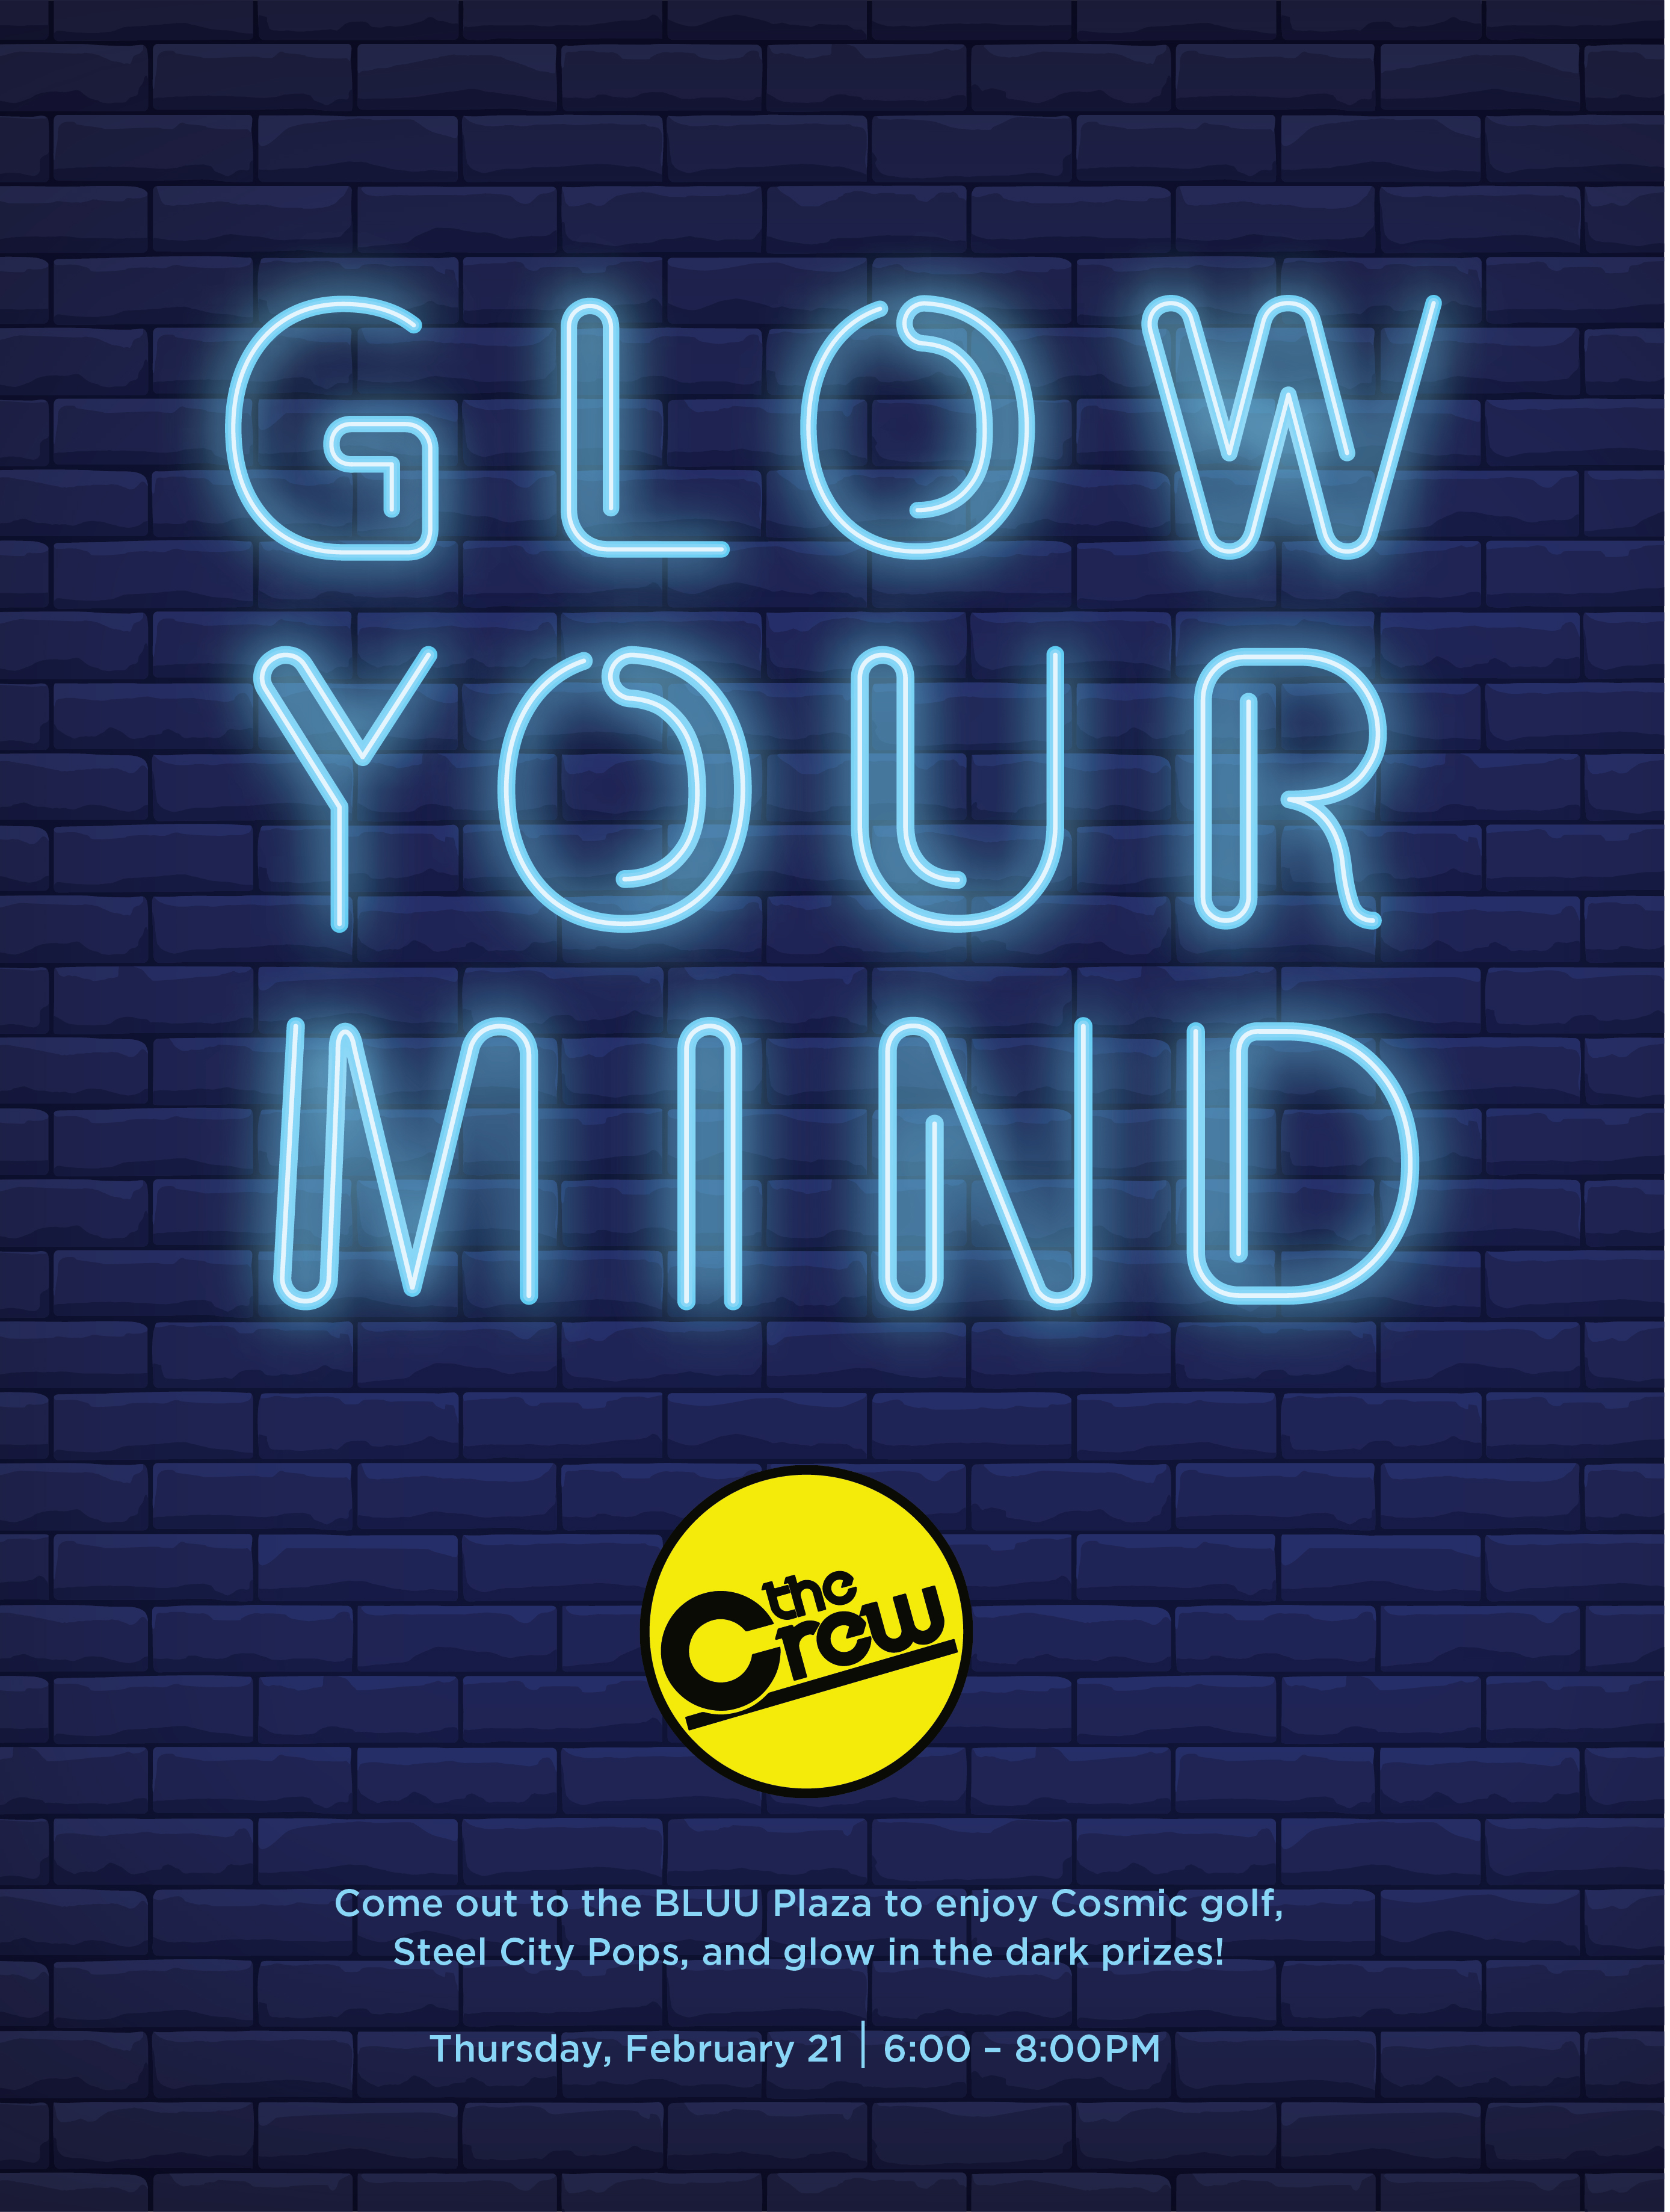 Glow your mind-02